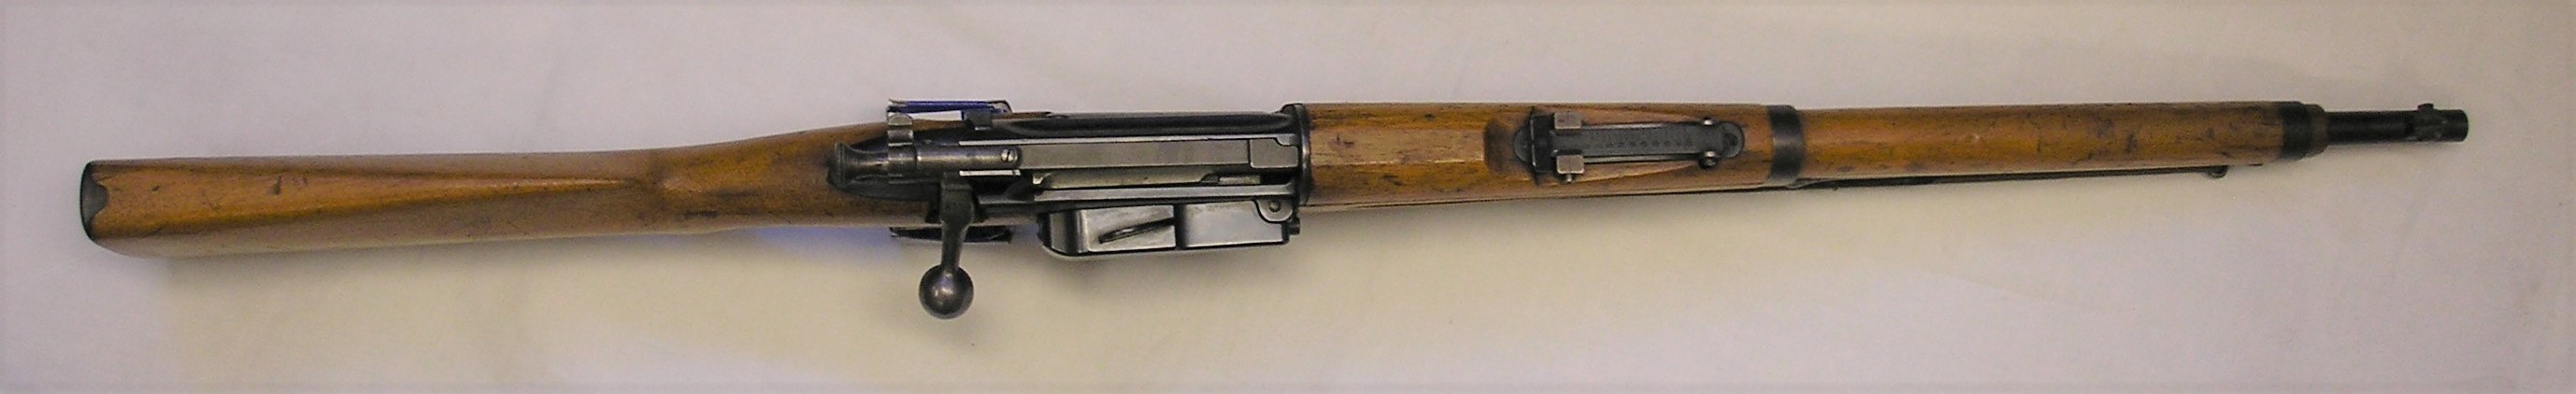 ./guns/rifle/bilder/Rifle-Kongsberg-Krag-M1904-9443-8.JPG